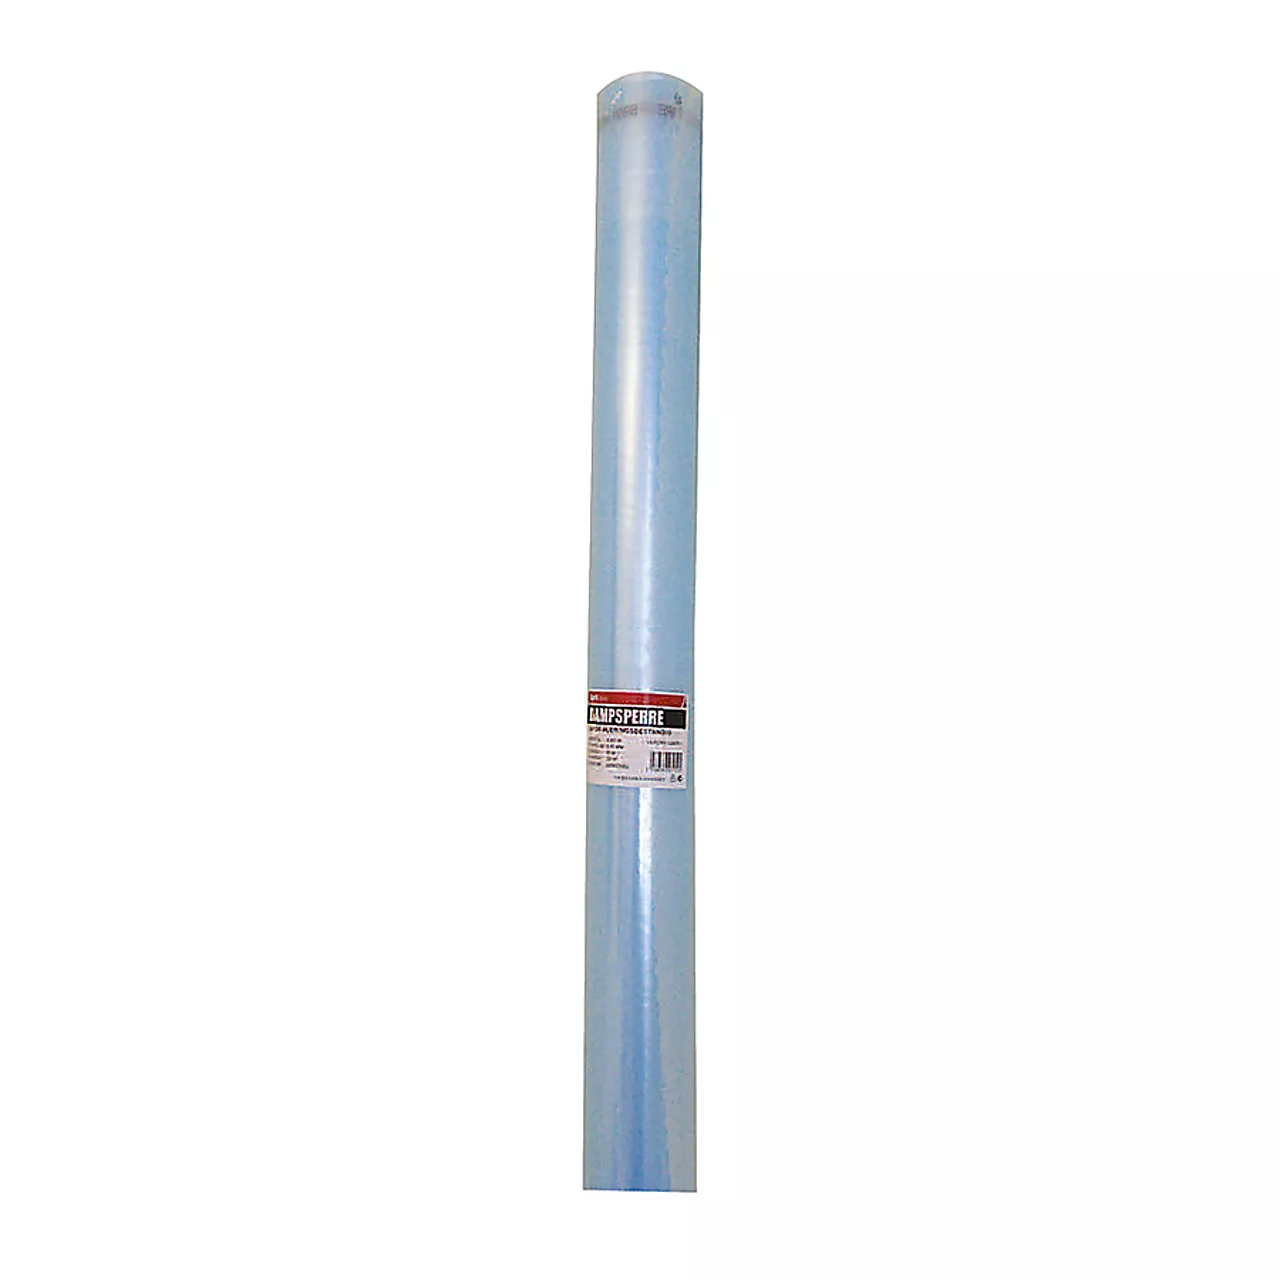 Dampsperre for gulv/vegg 2,6x15 m 0,20 mm - 39 m2